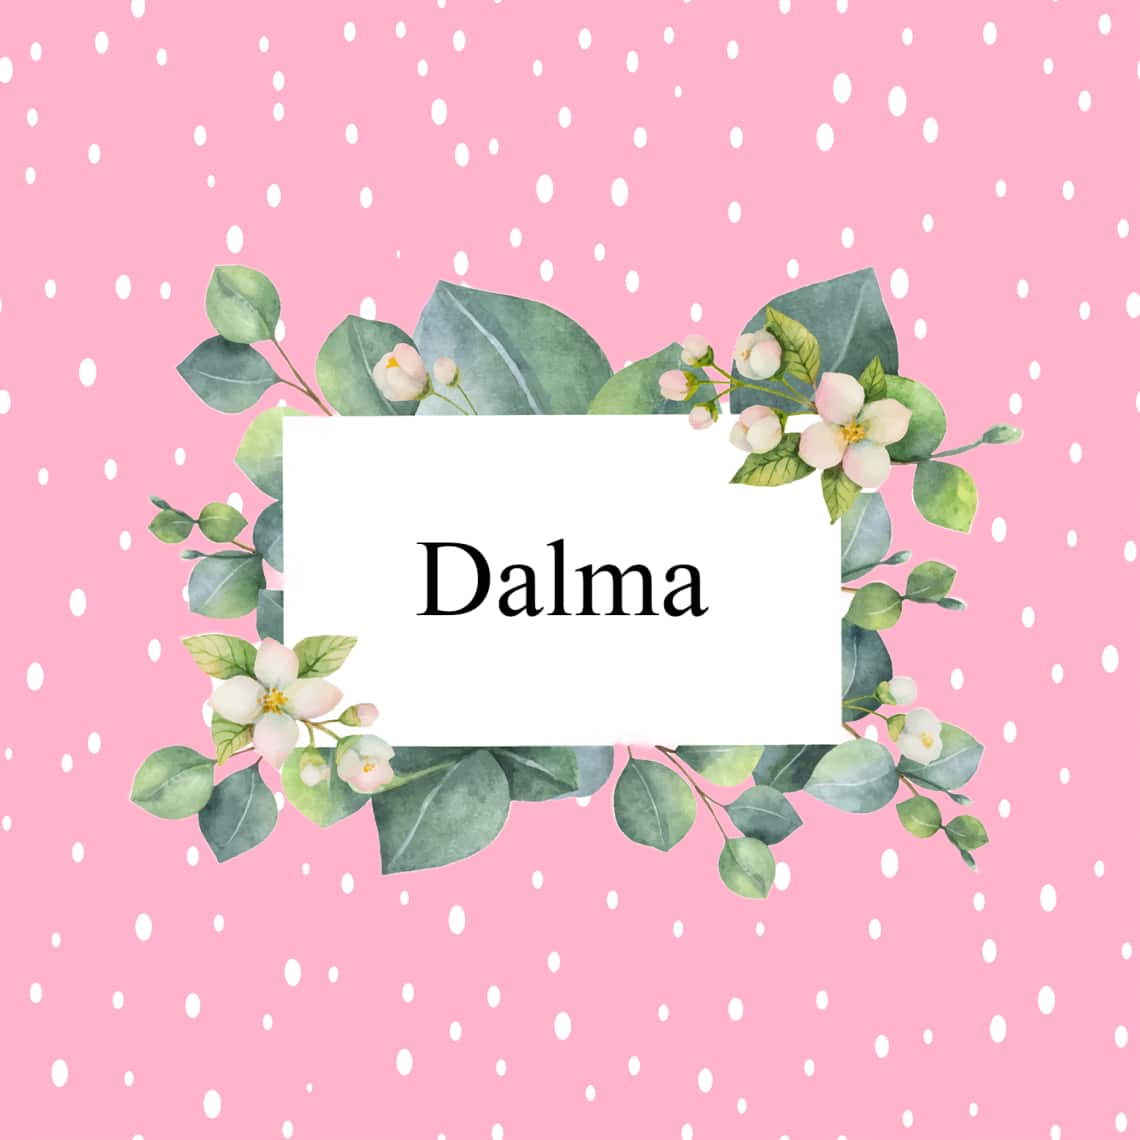 Dalma